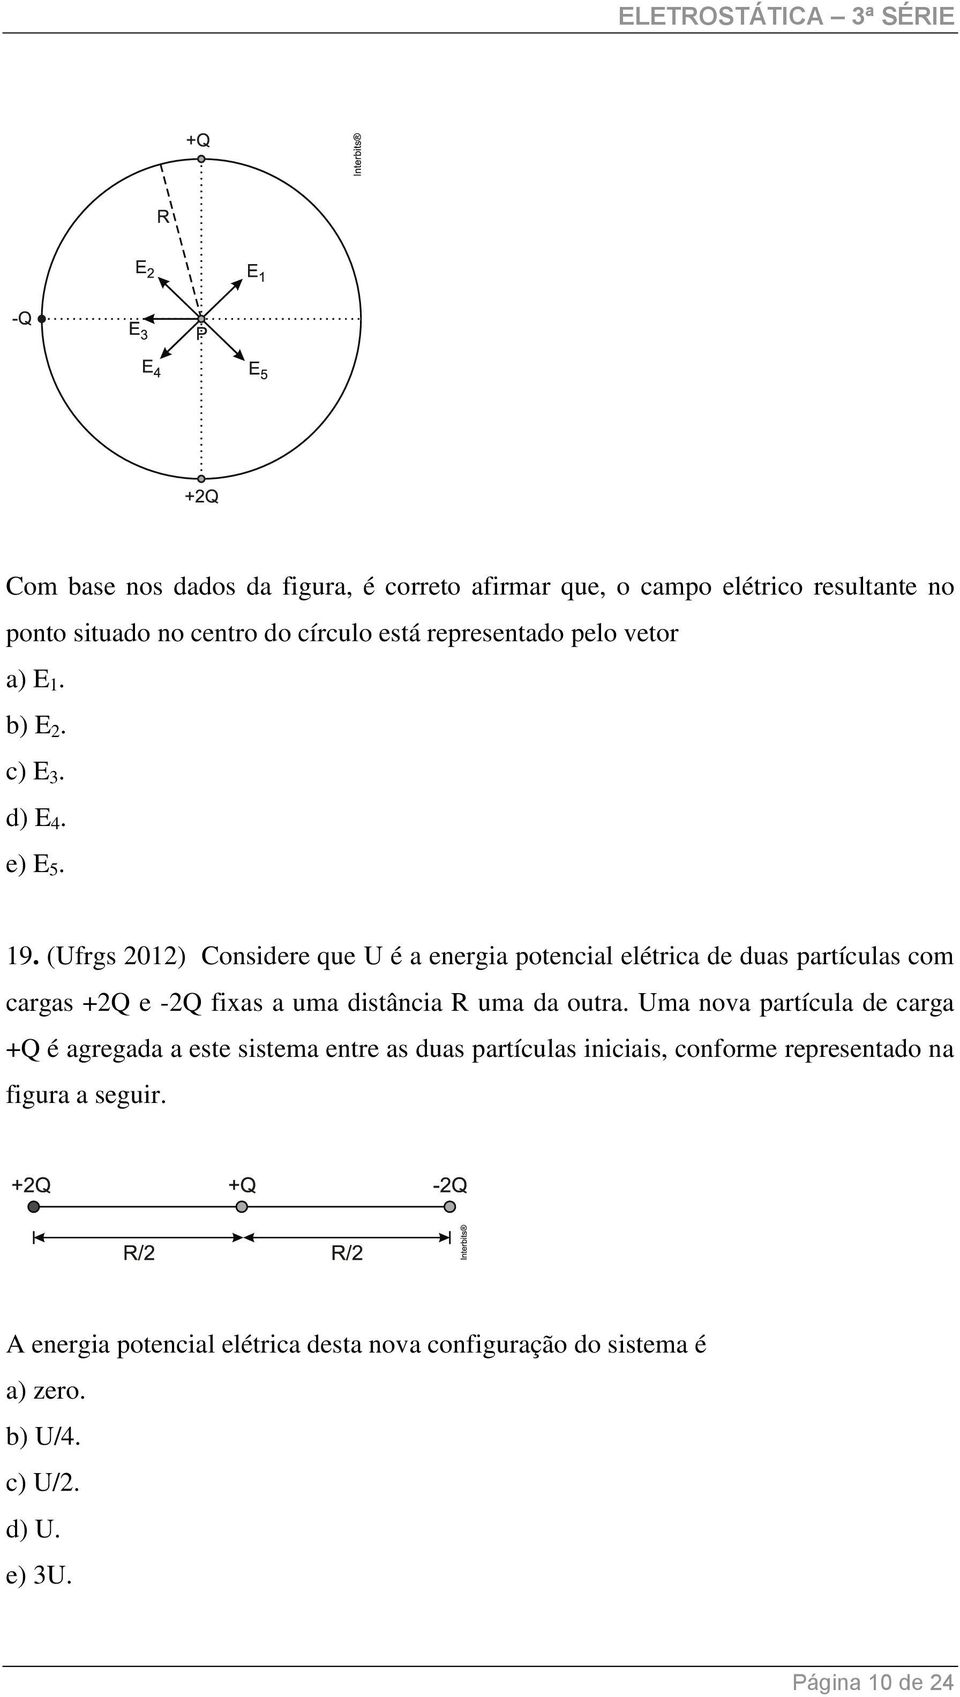 (Ufrgs 01) Considere que U é a energia potencial elétrica de duas partículas com cargas +Q e -Q fixas a uma distância R uma da outra.